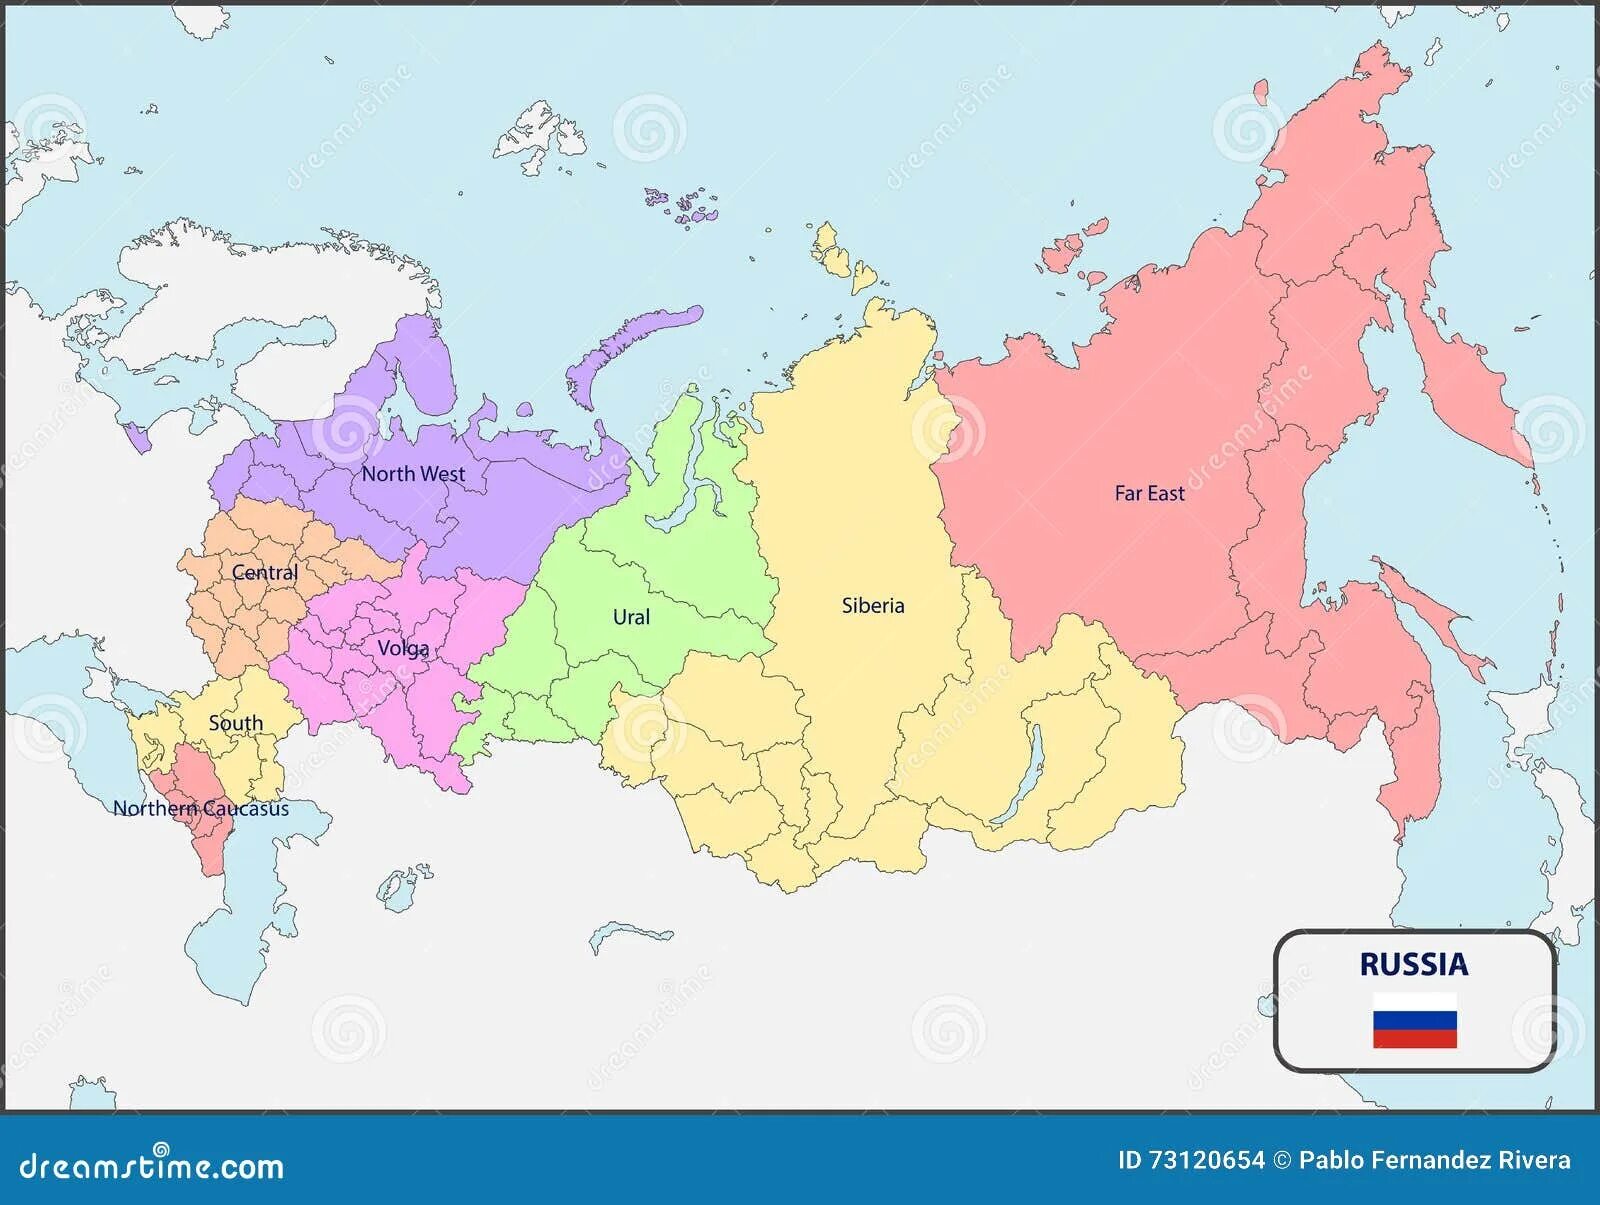 Russian Federation Map. Russia West карта. Политическая карта России 2023. Карта регионов России 2023.